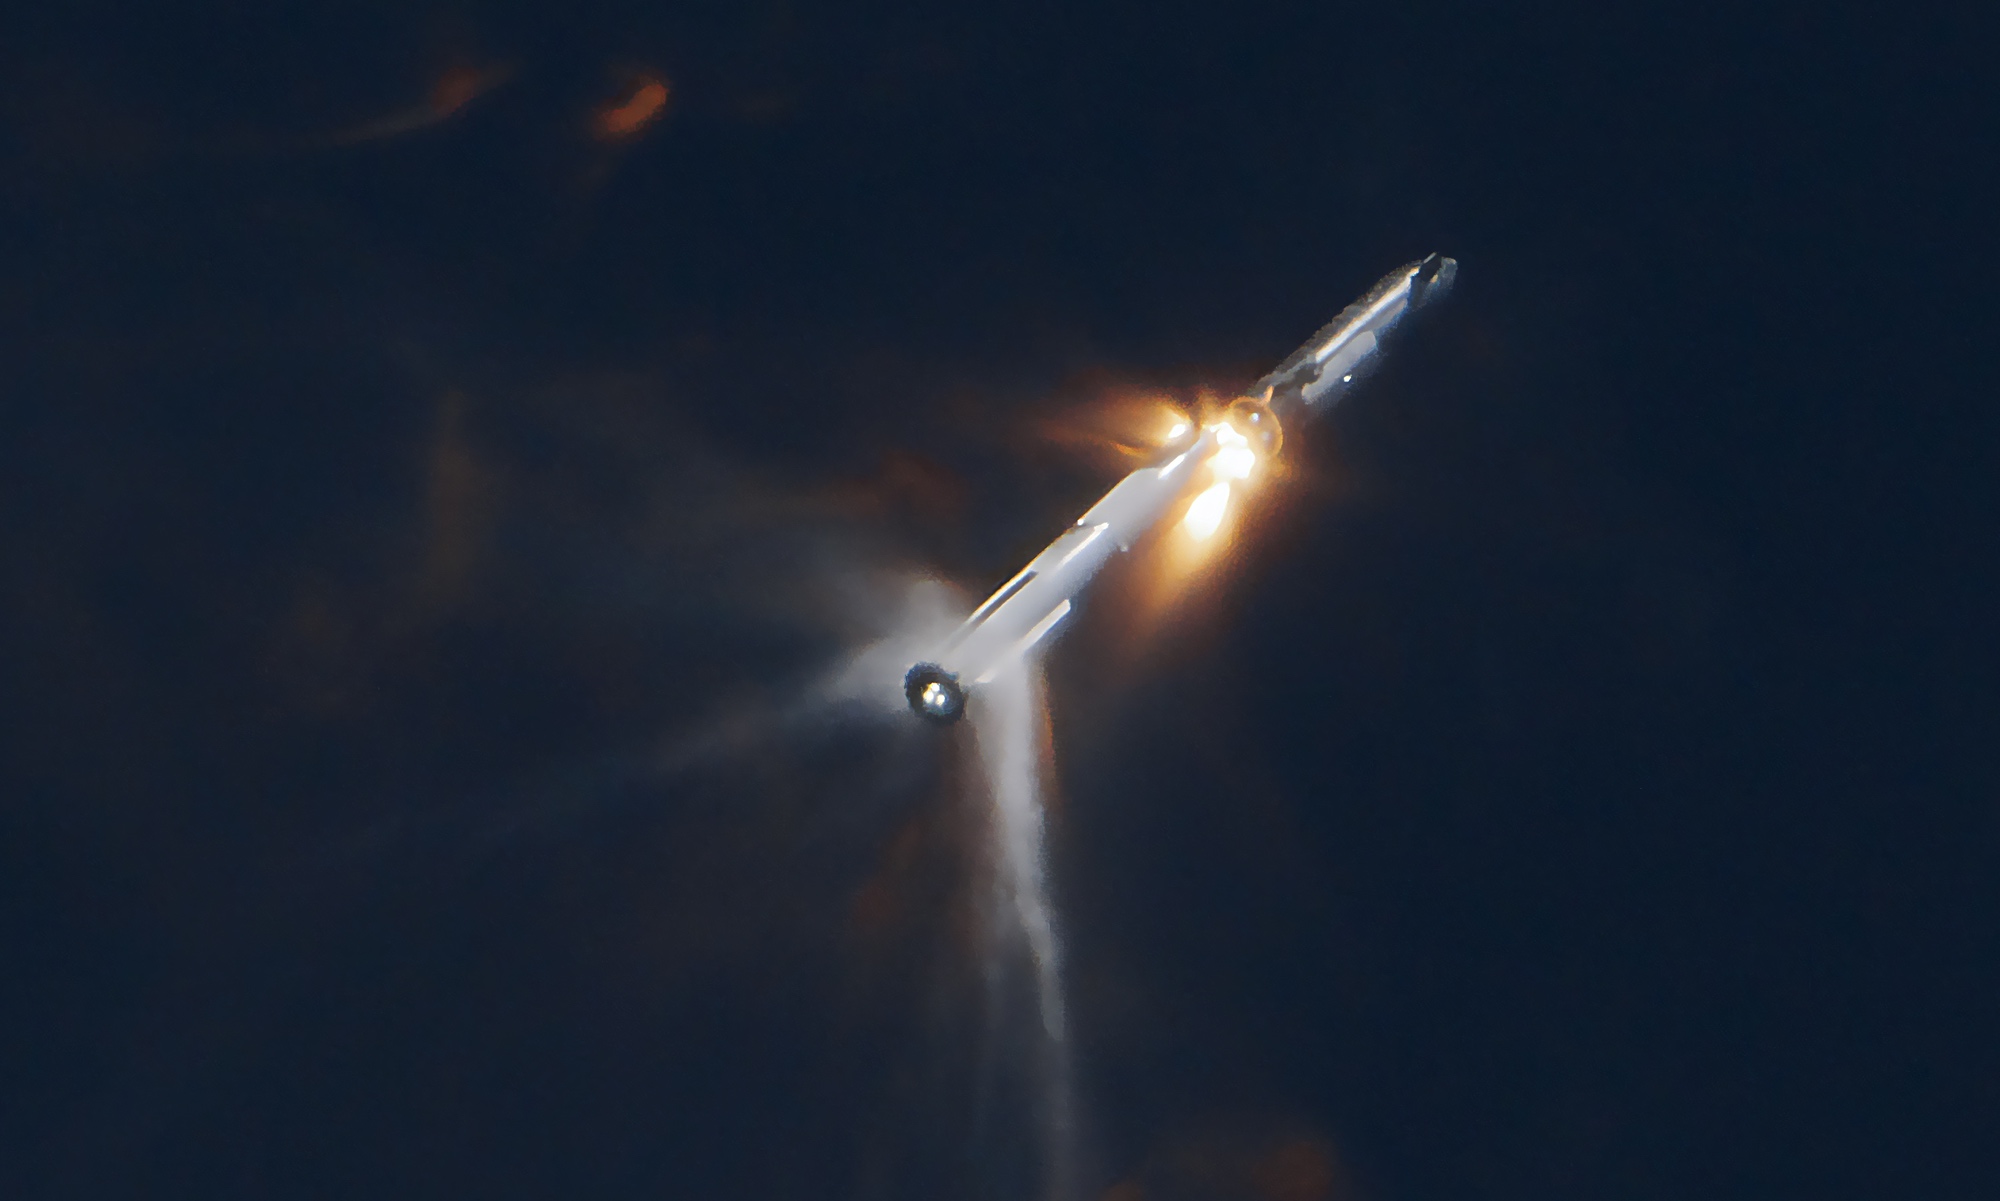 SpaceX zegt dat het afblazen van drijfgas het verlies van het tweede ruimteschip veroorzaakte